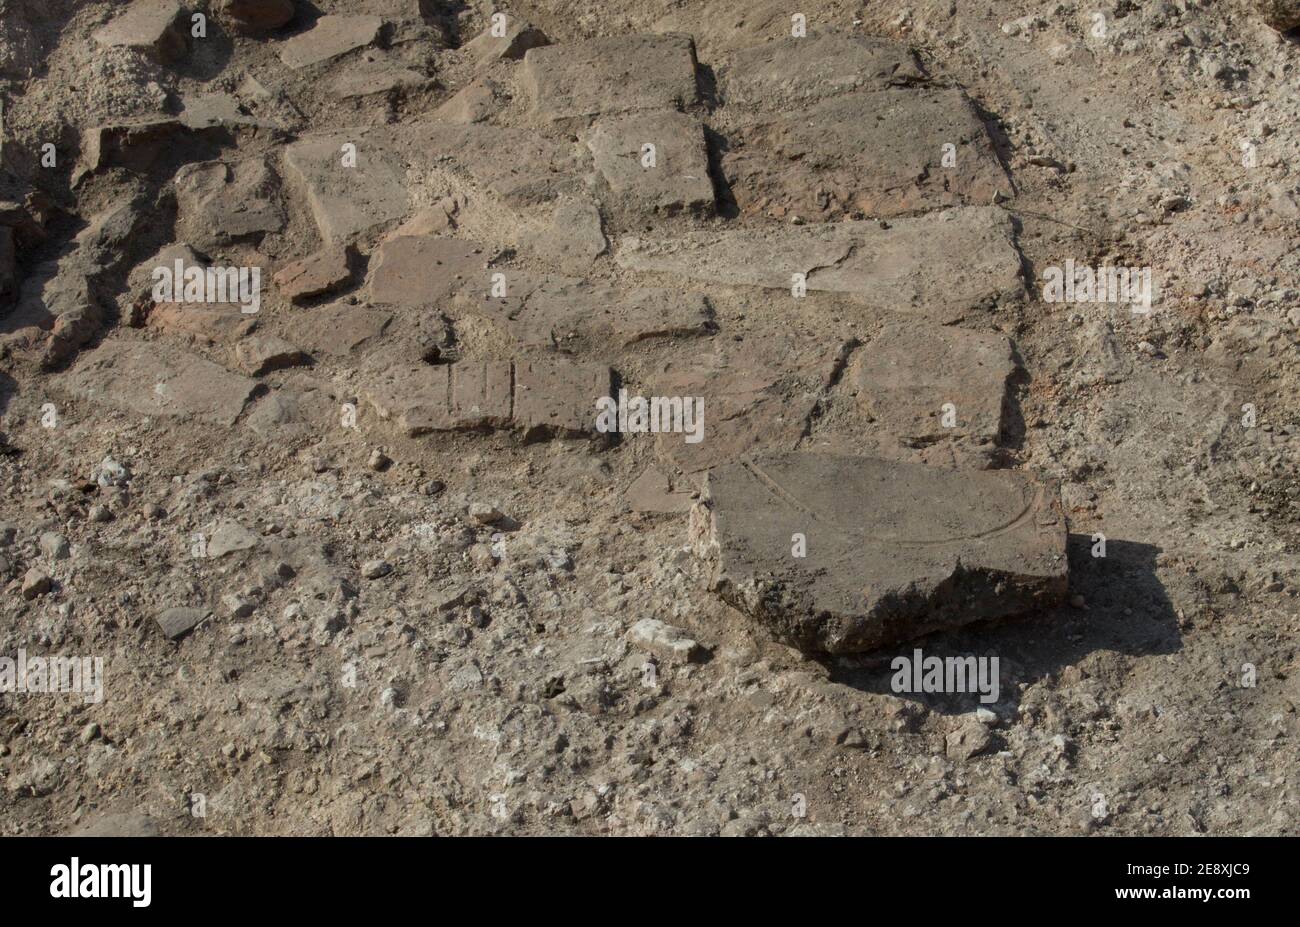 Uni de Reading excavation de la salle de bains à la ville romaine de Calleva Atrebatum (Silchester). Mystérieuse marque faite dans une tuile, peut-être délibéré? Banque D'Images